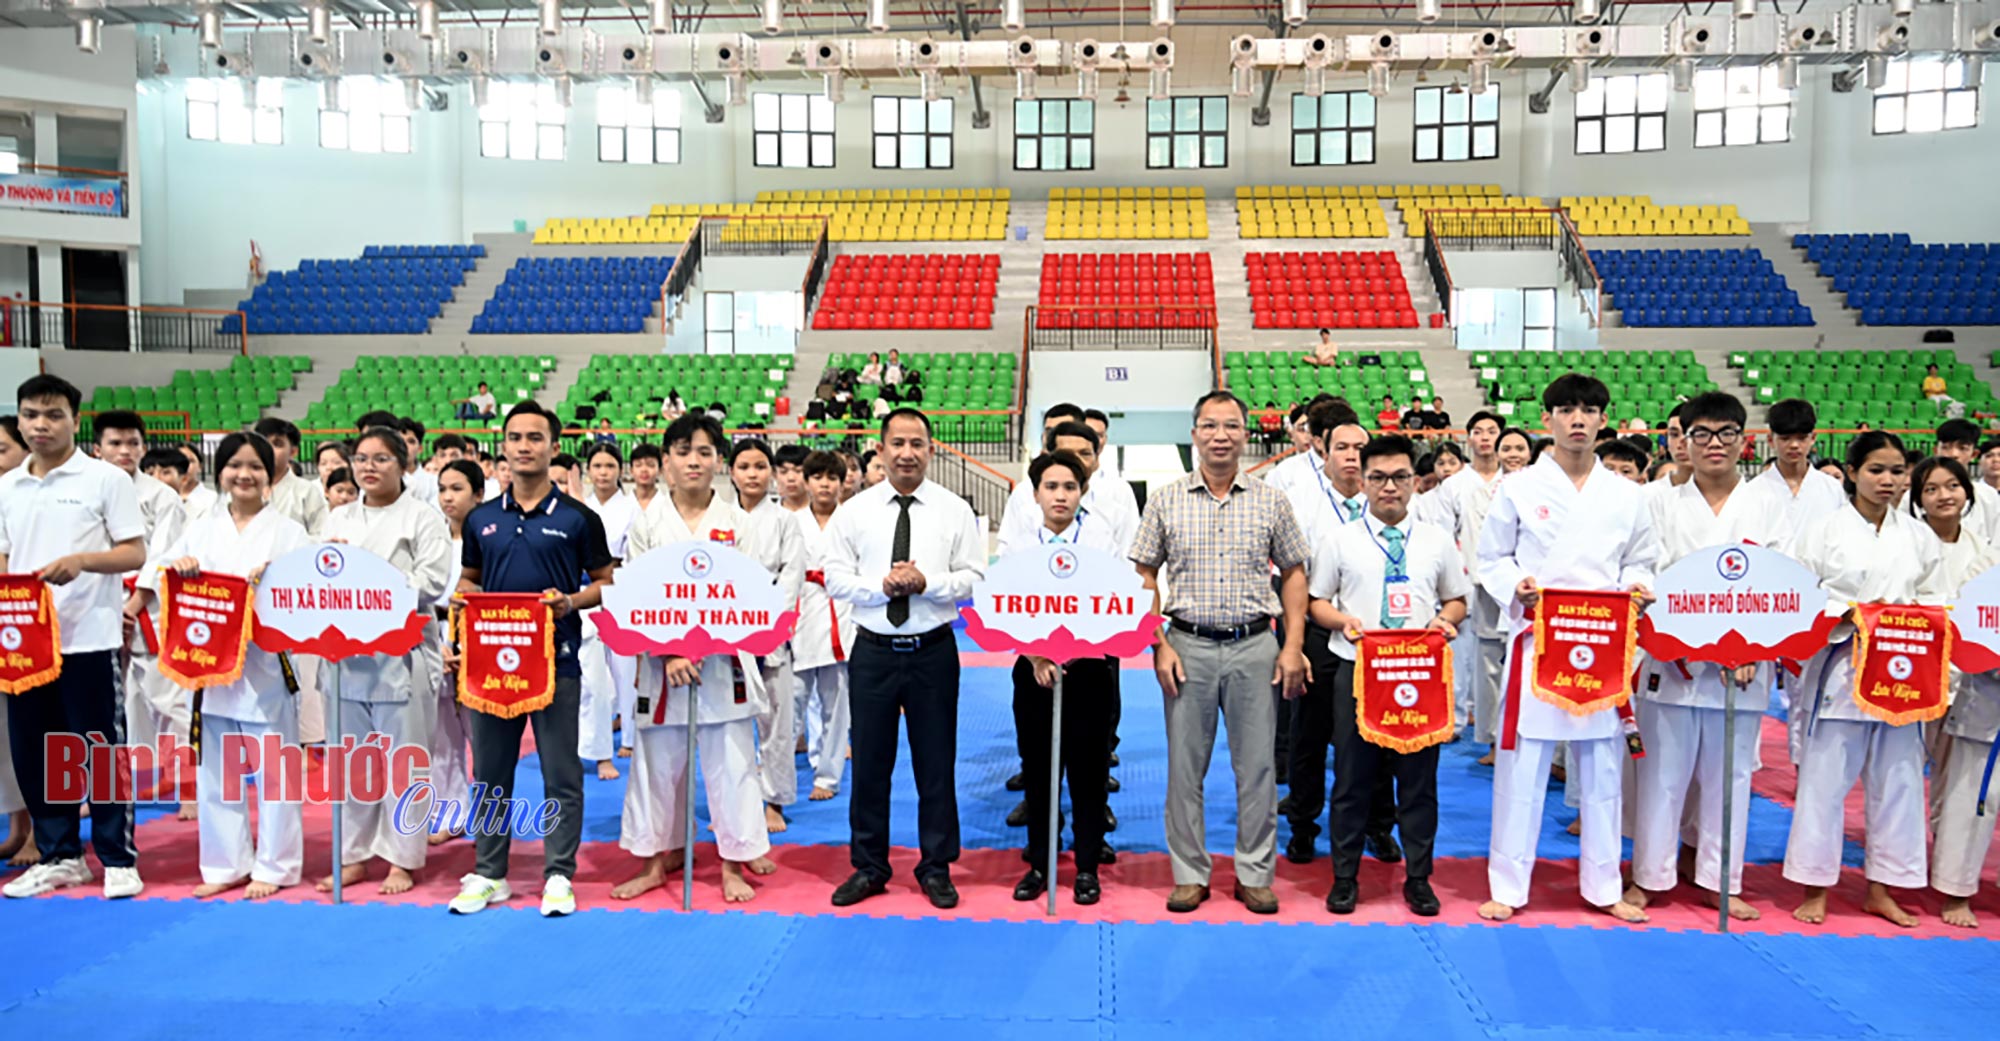 Khai mạc giải vô địch Karate các lứa tuổi tỉnh Bình Phước